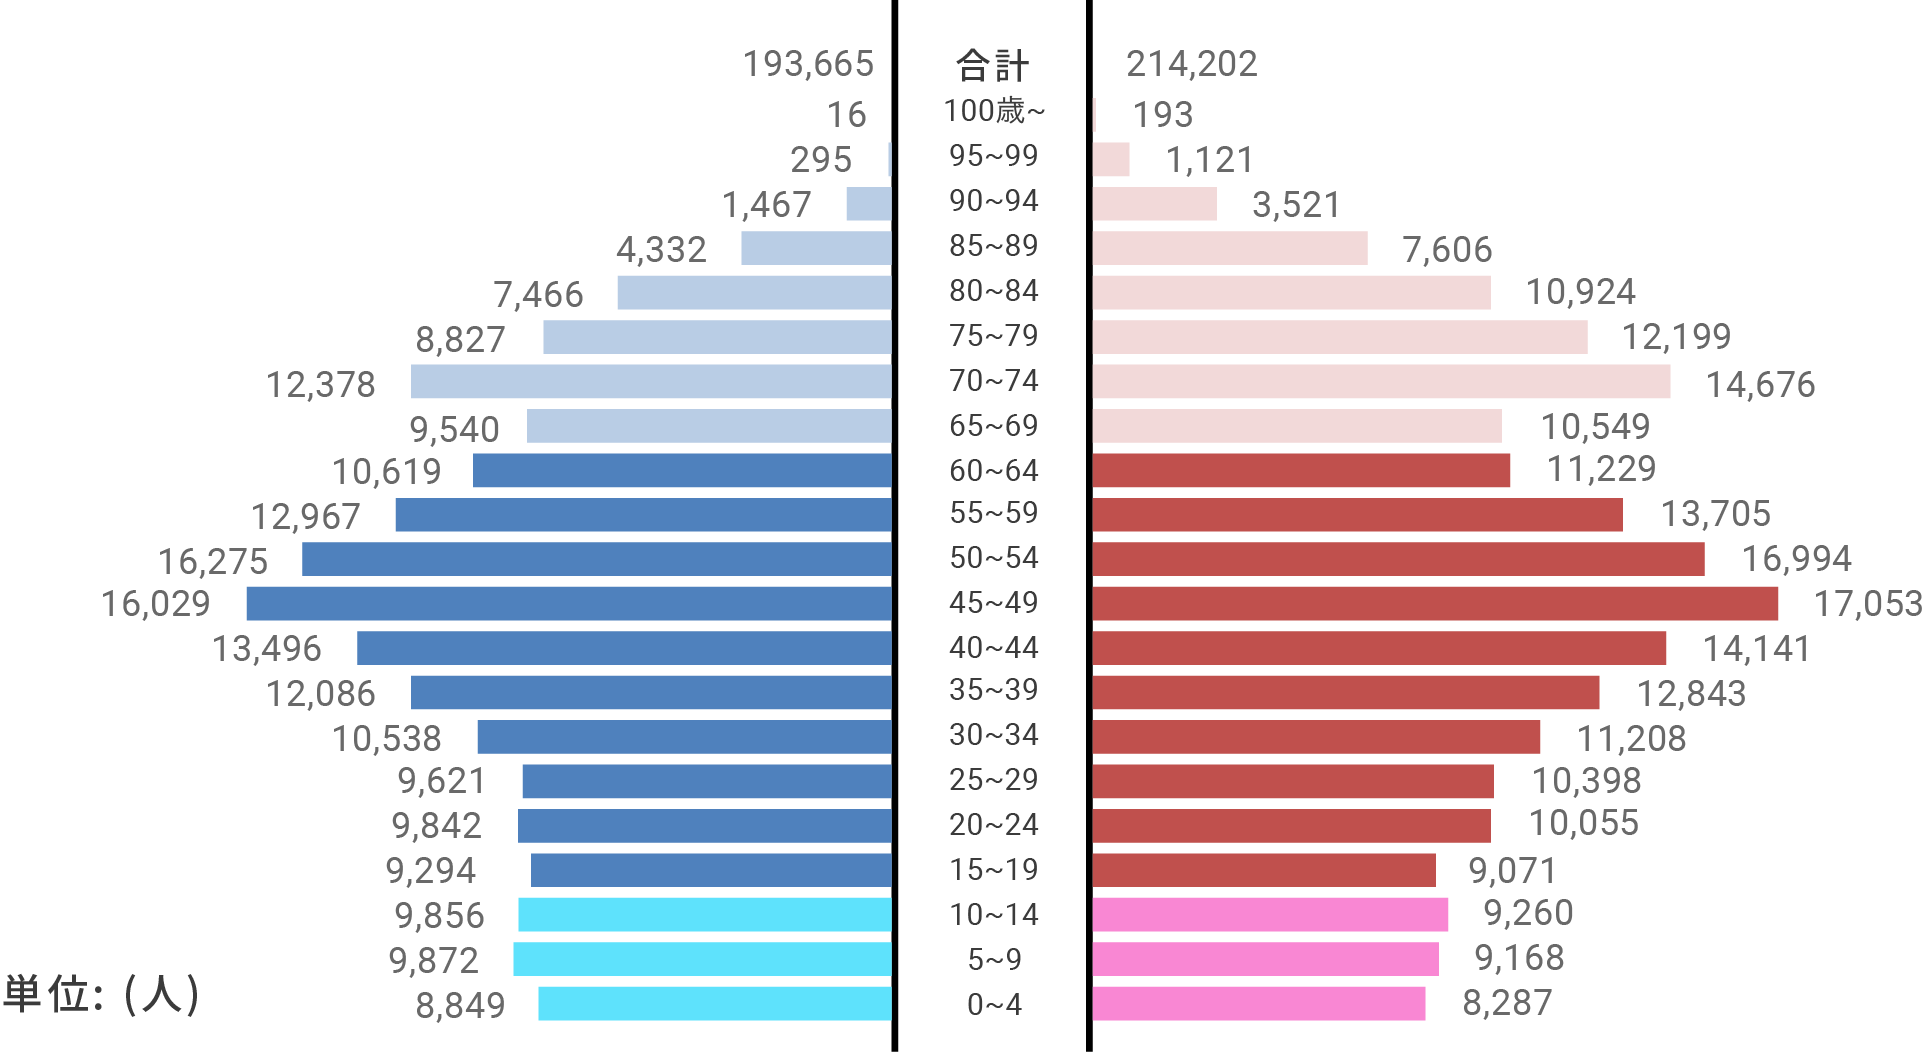 豊中市の人口構成のデータ